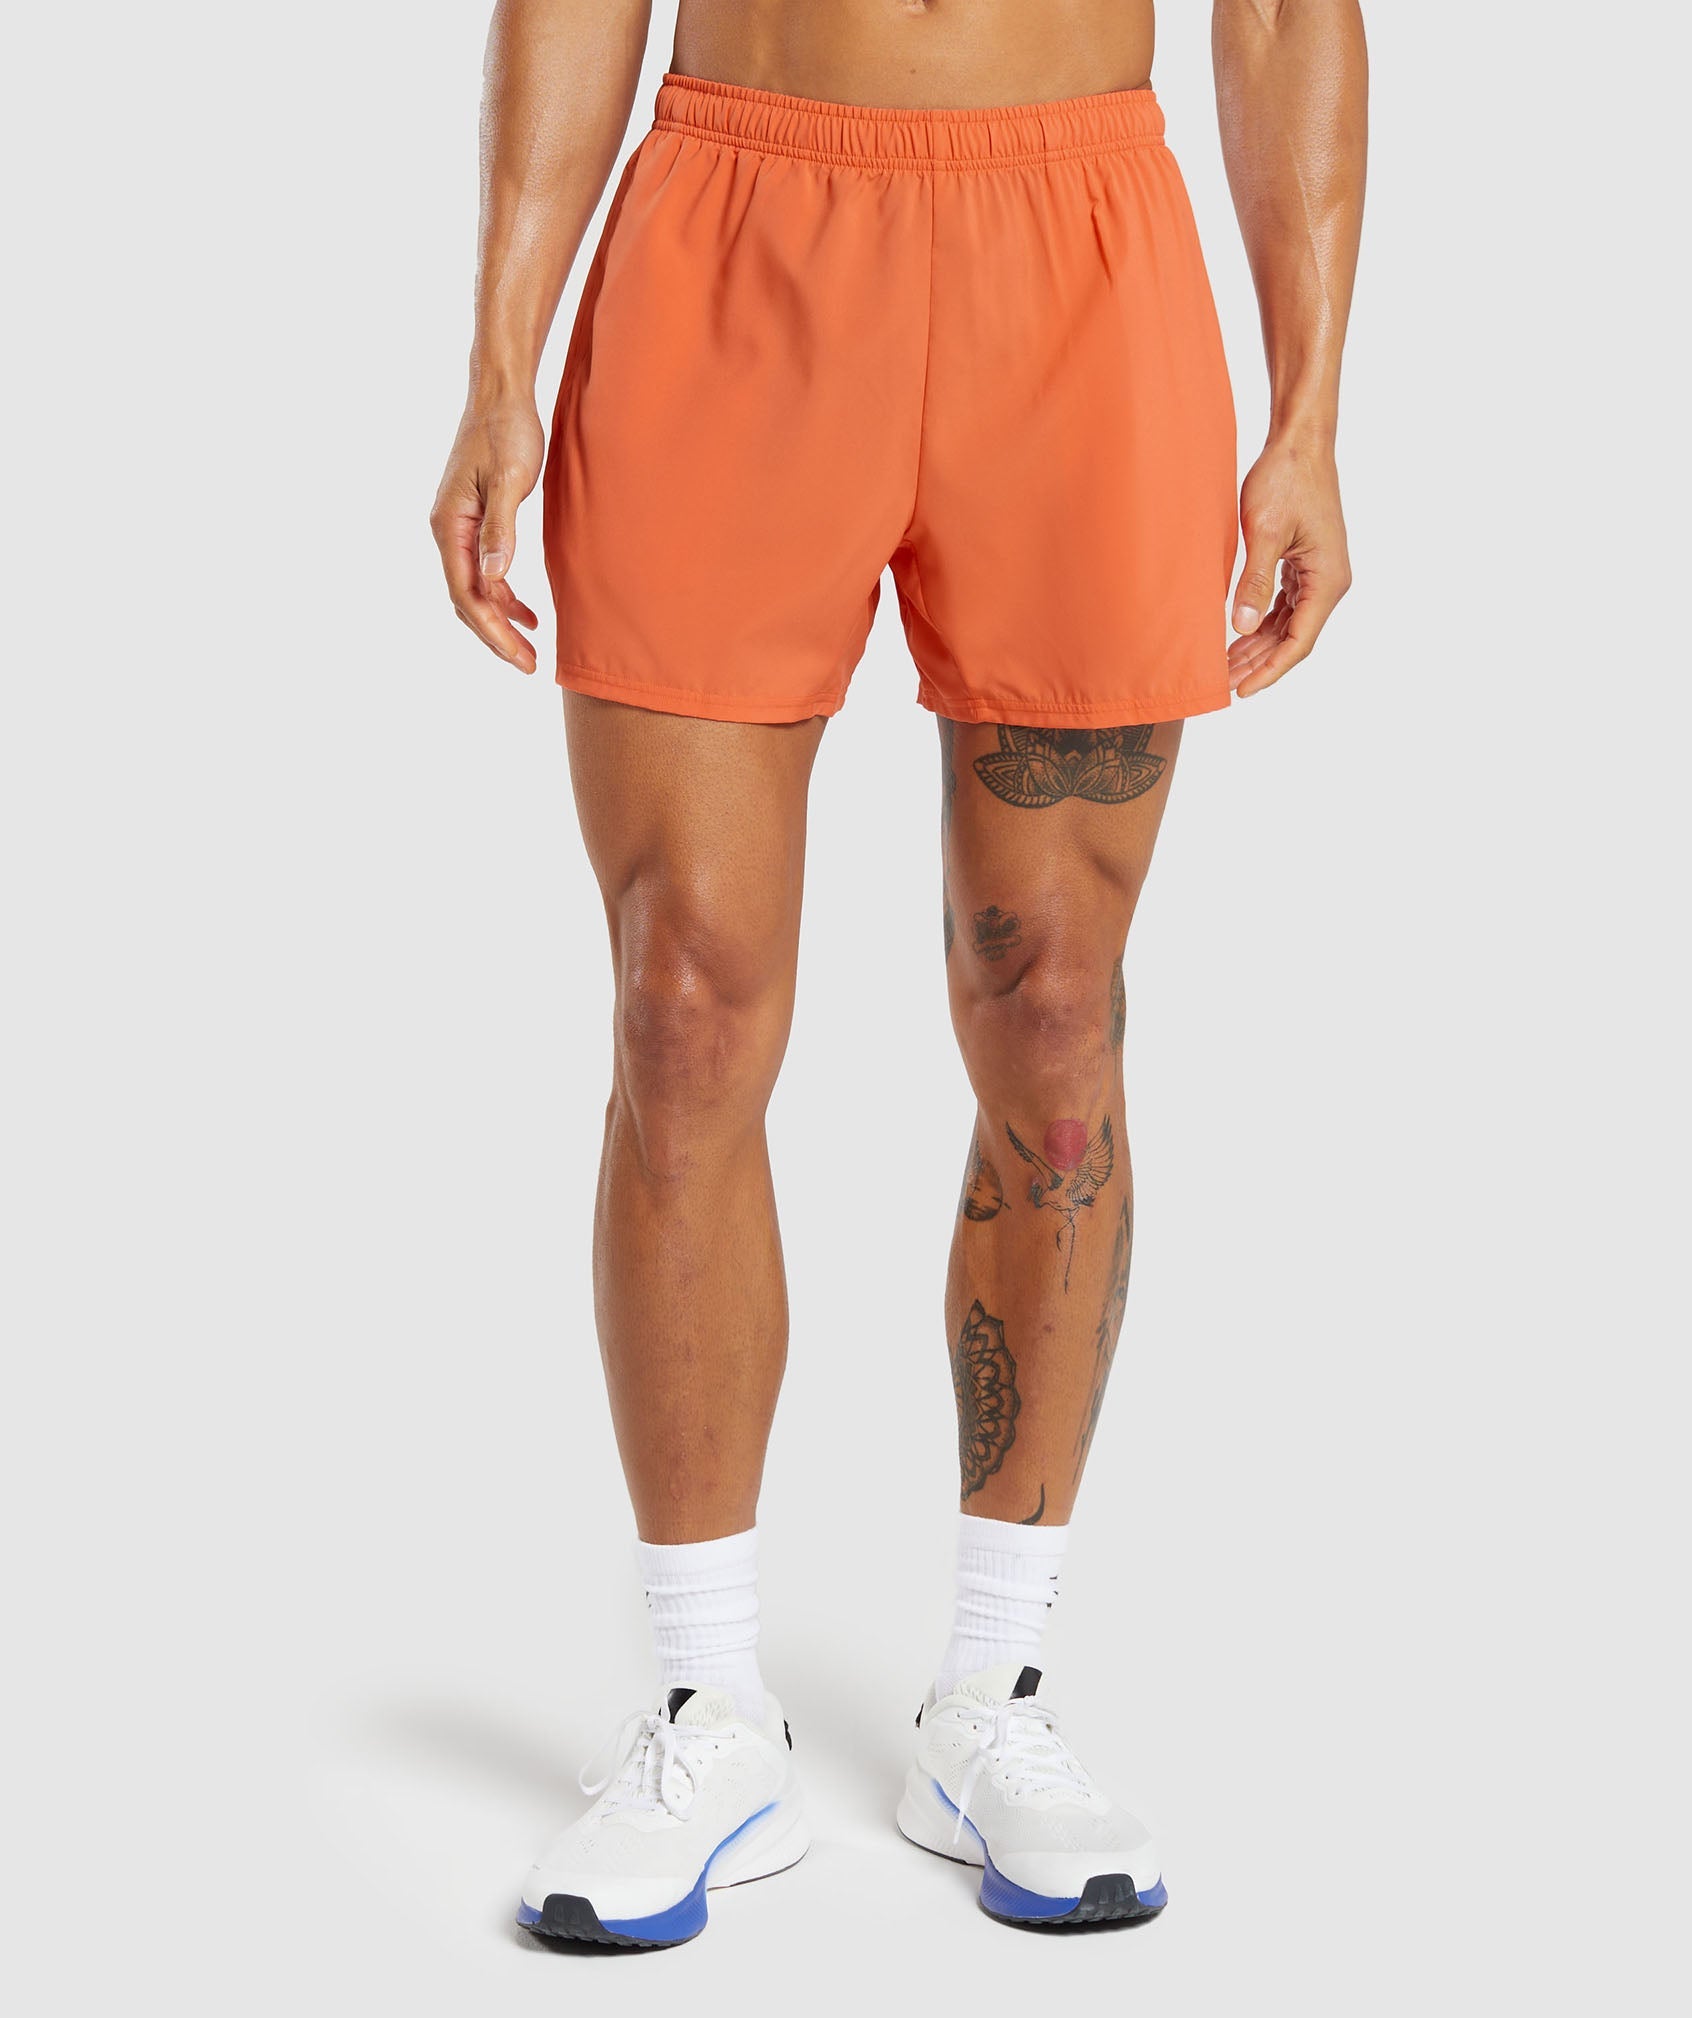 Gymshark Arrival 5 Shorts - Aerospace Orange